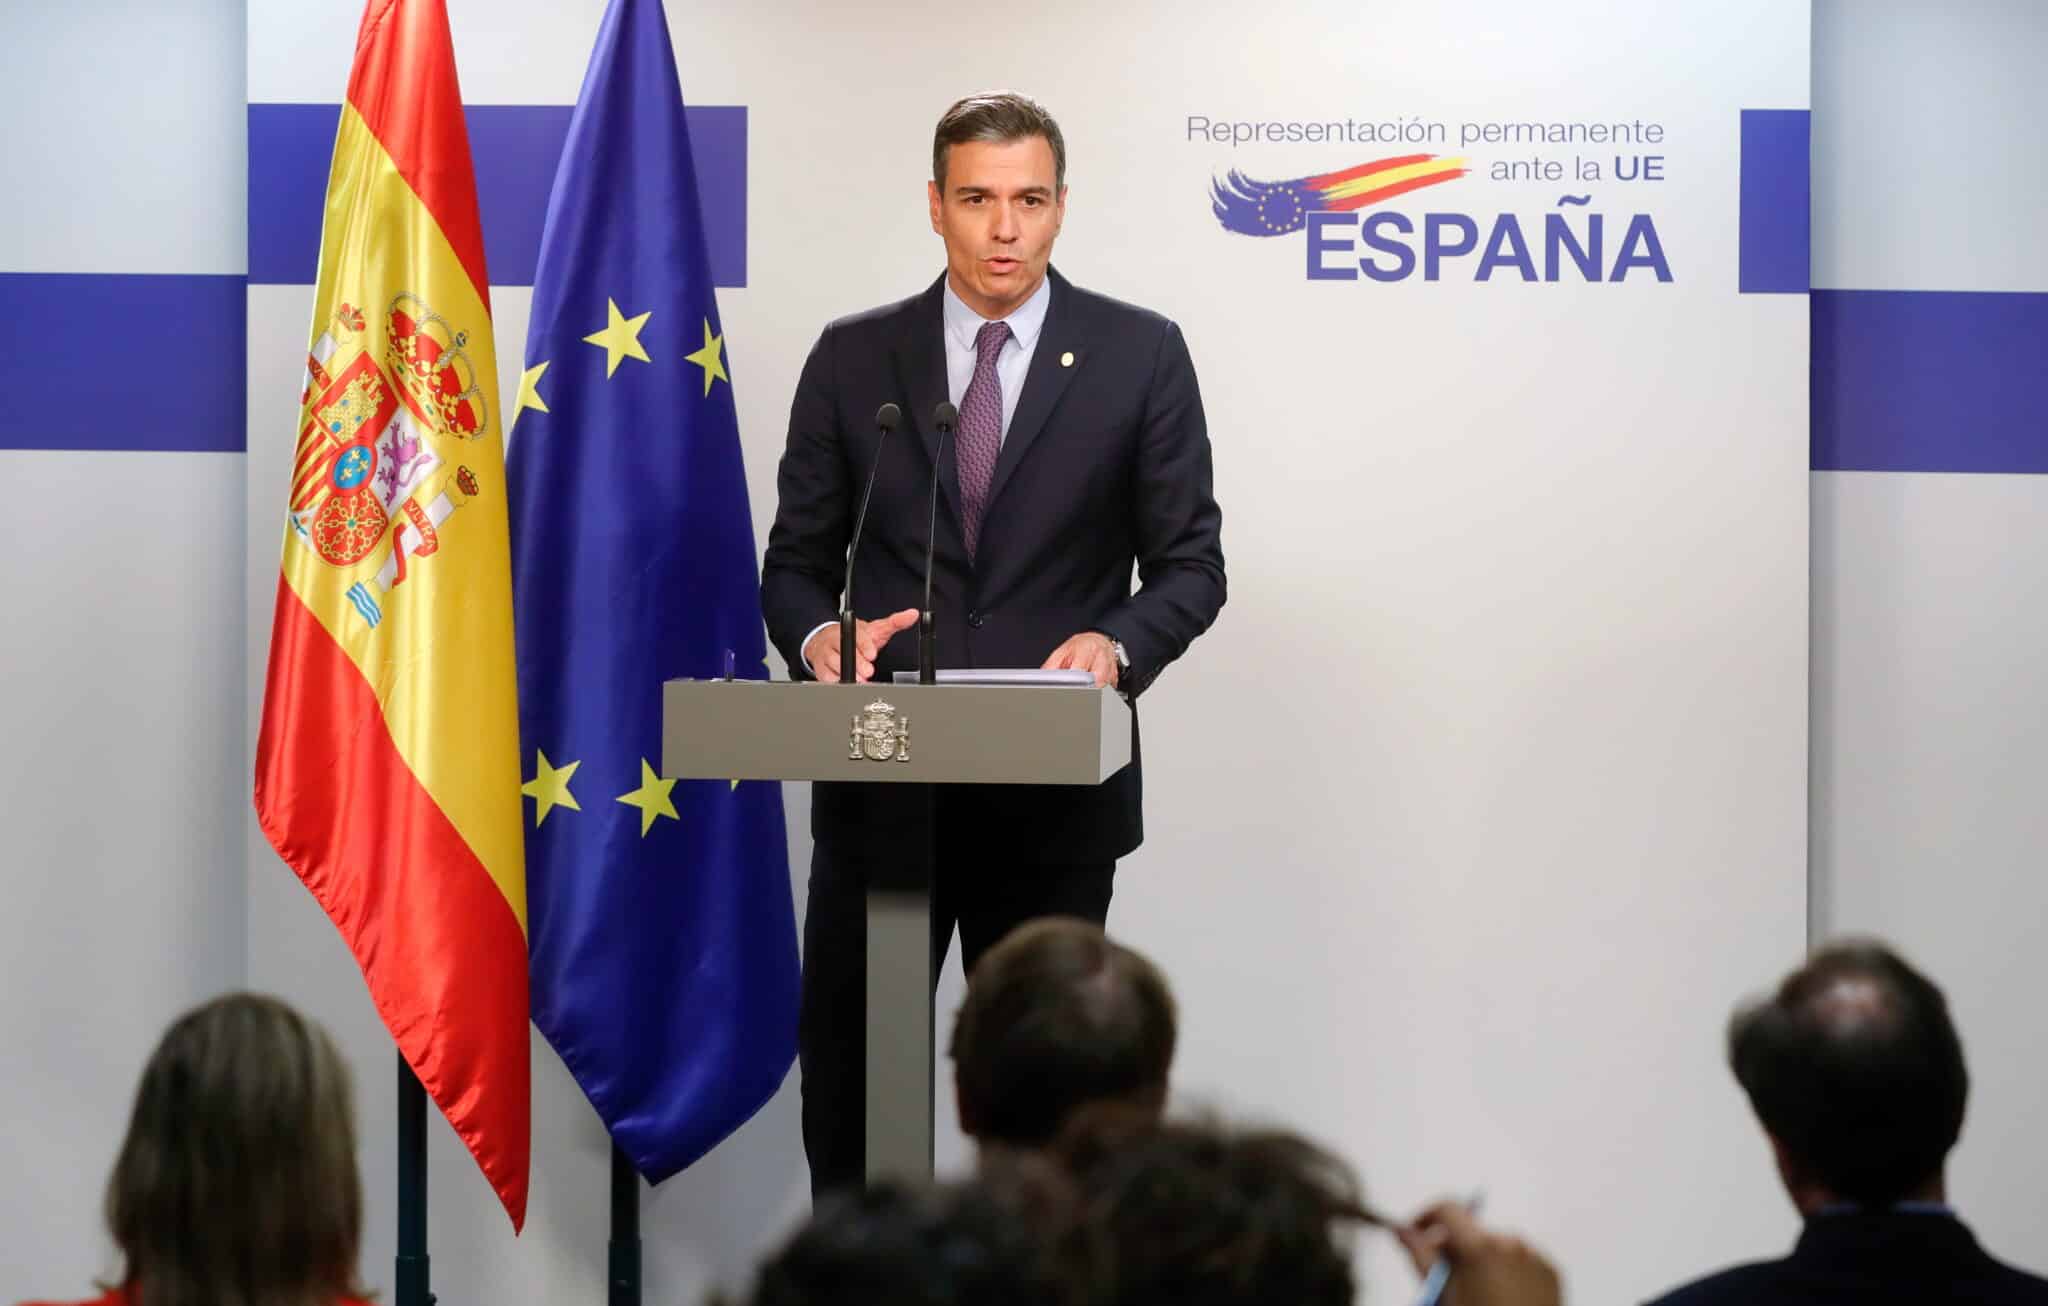 El presidente del Gobierno español, Pedro Sánchez, da una conferencia de prensa al final de una cumbre de la UE